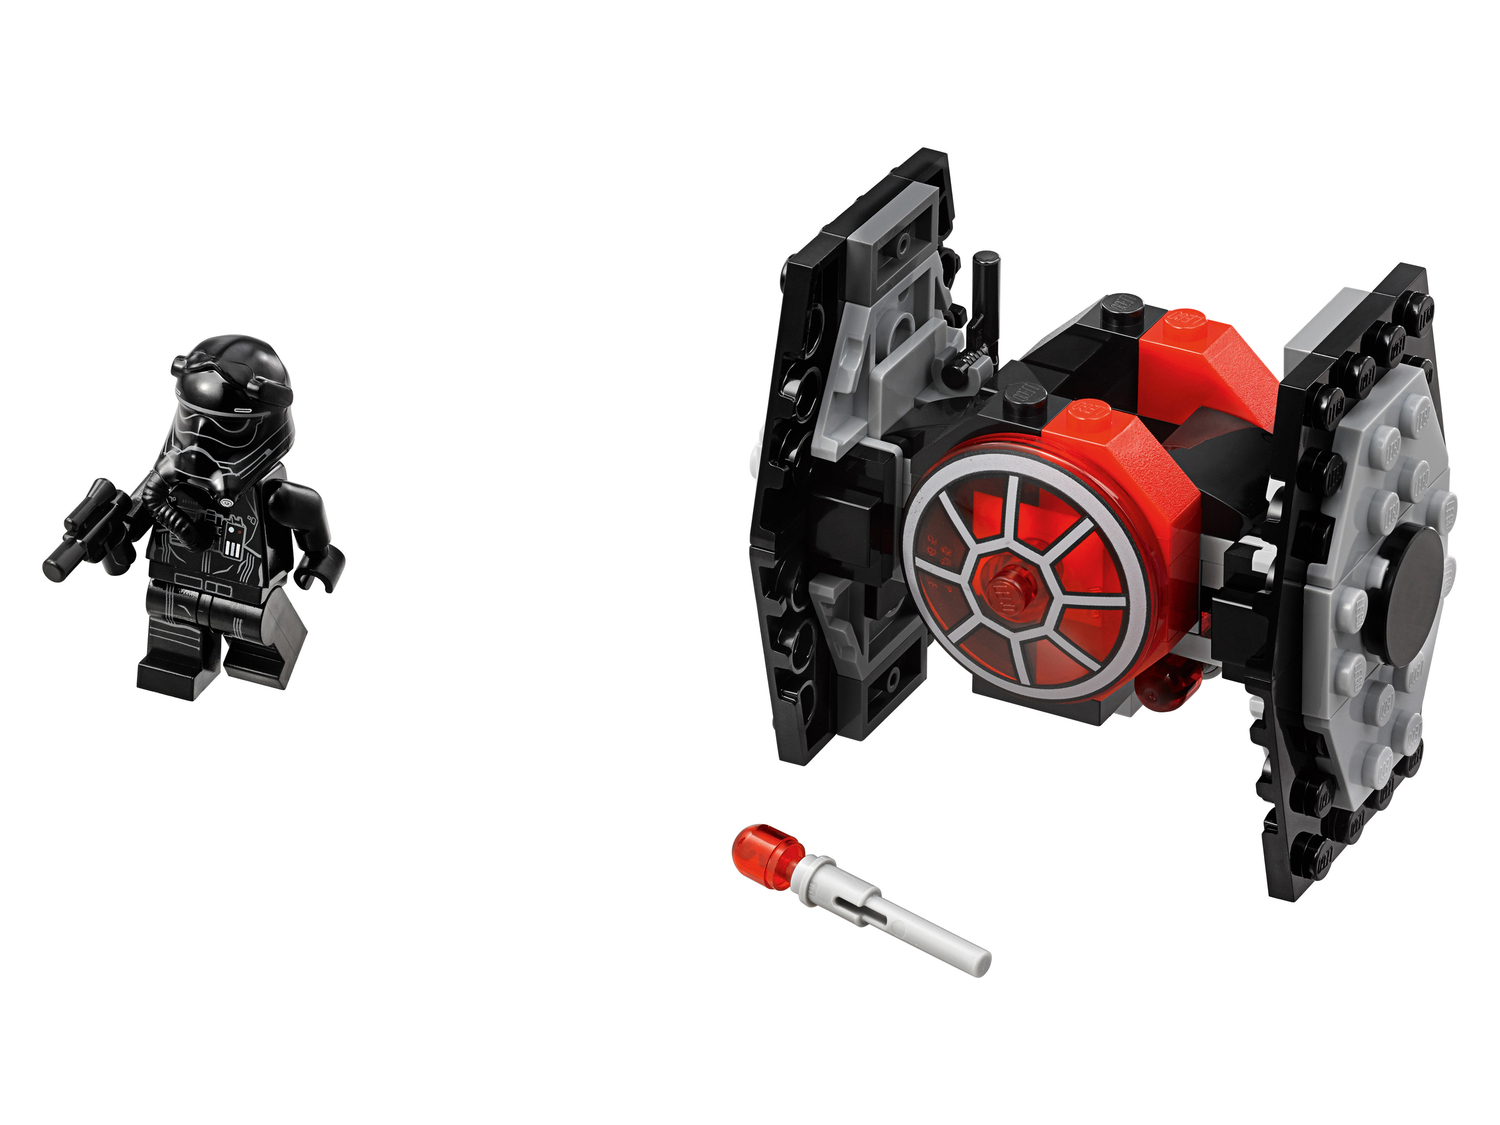 Costruzioni Star-wars, prezzo 8.99 €  

Caratteristiche

- Lego 751194